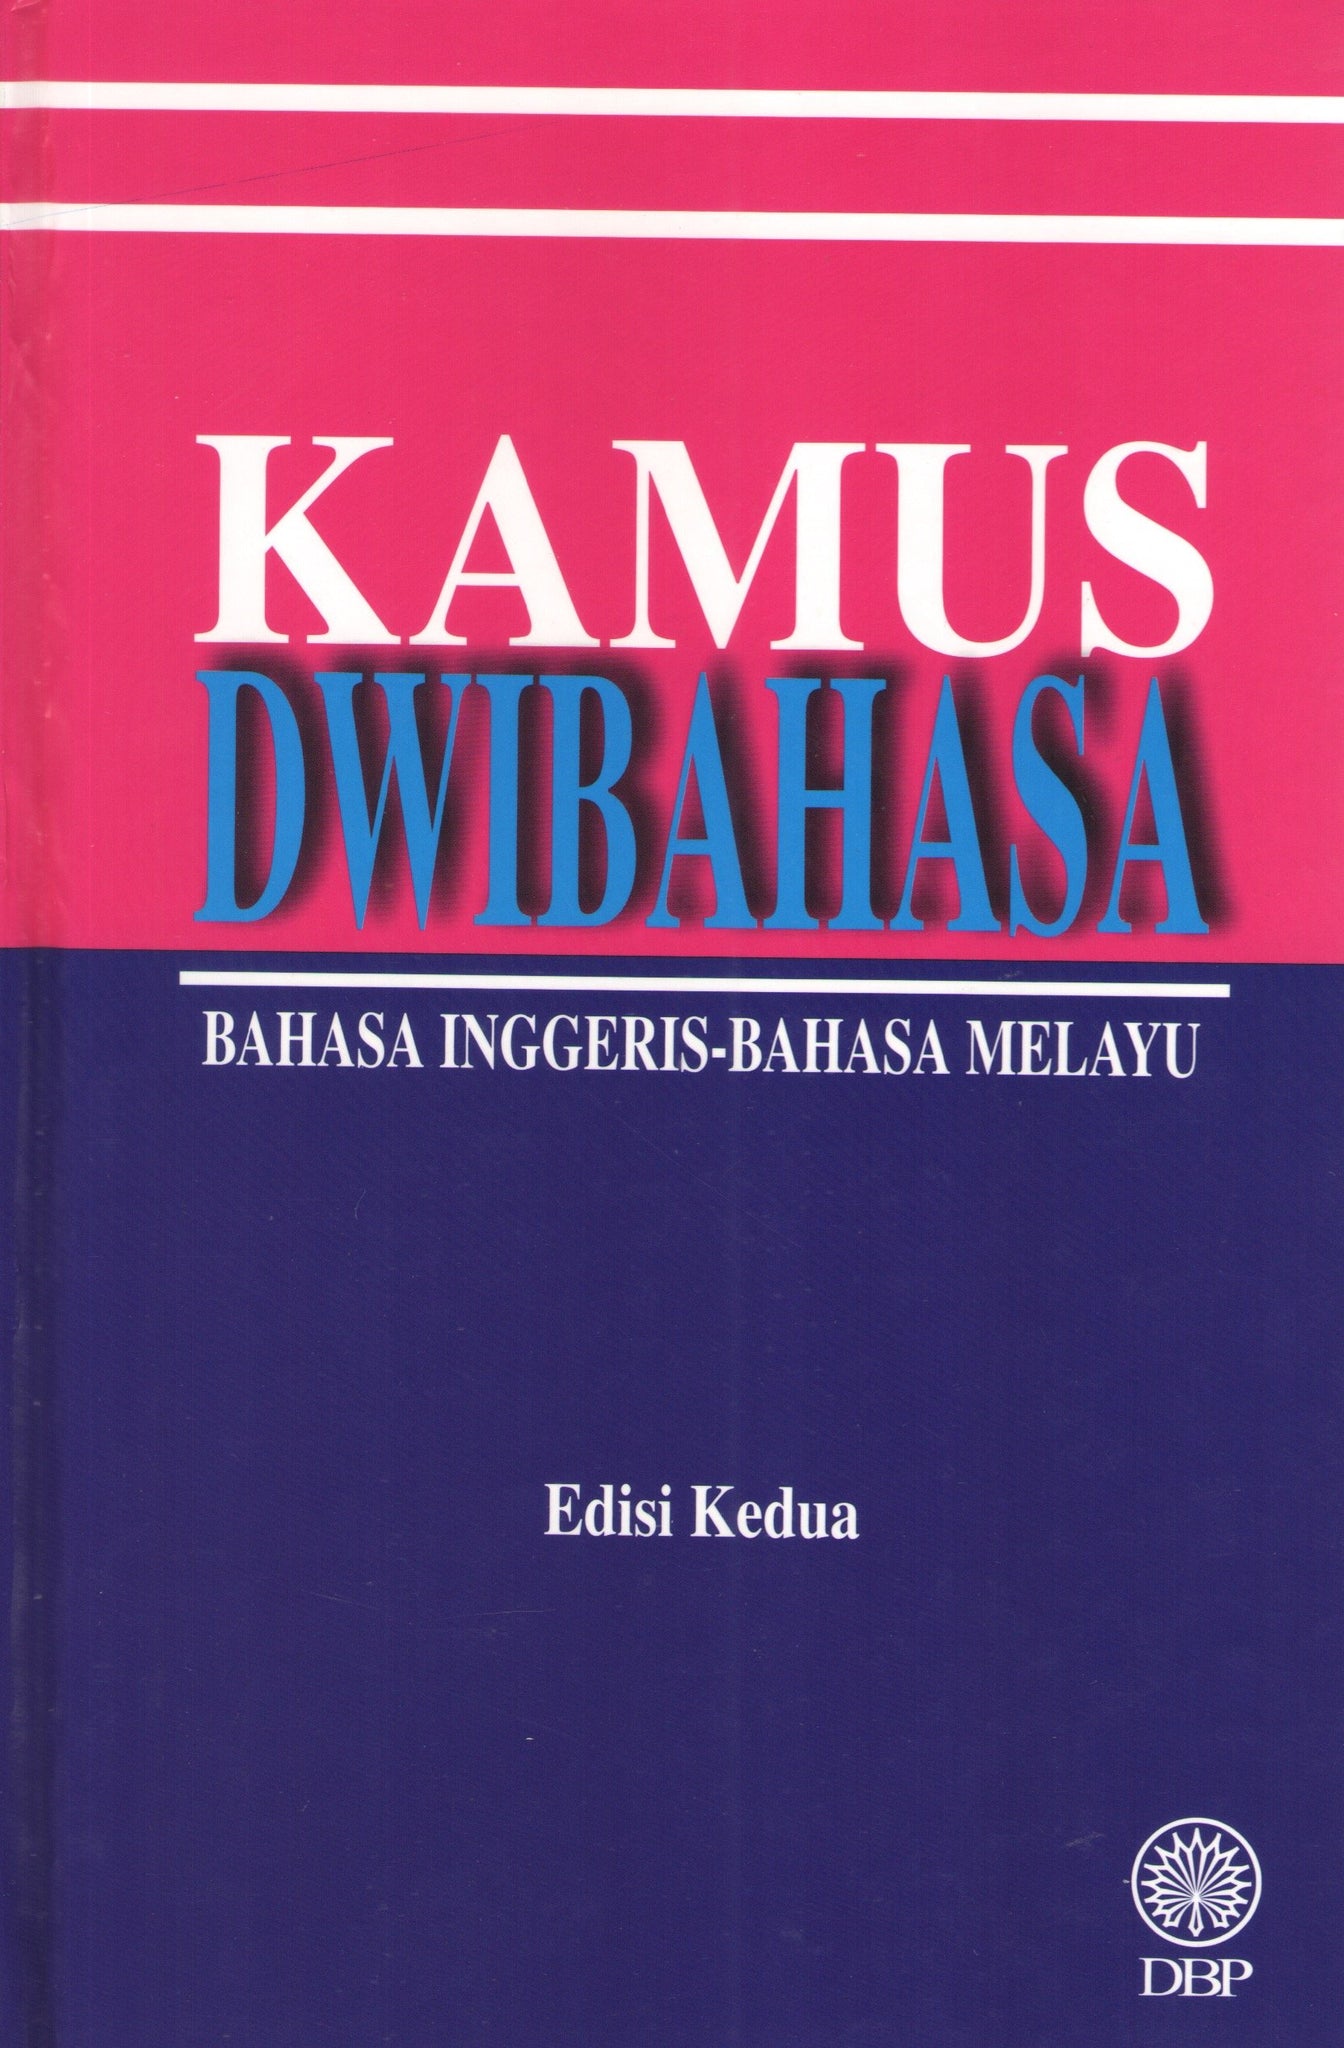 translate bahasa lampung dialek nyo ke bahasa indonesia